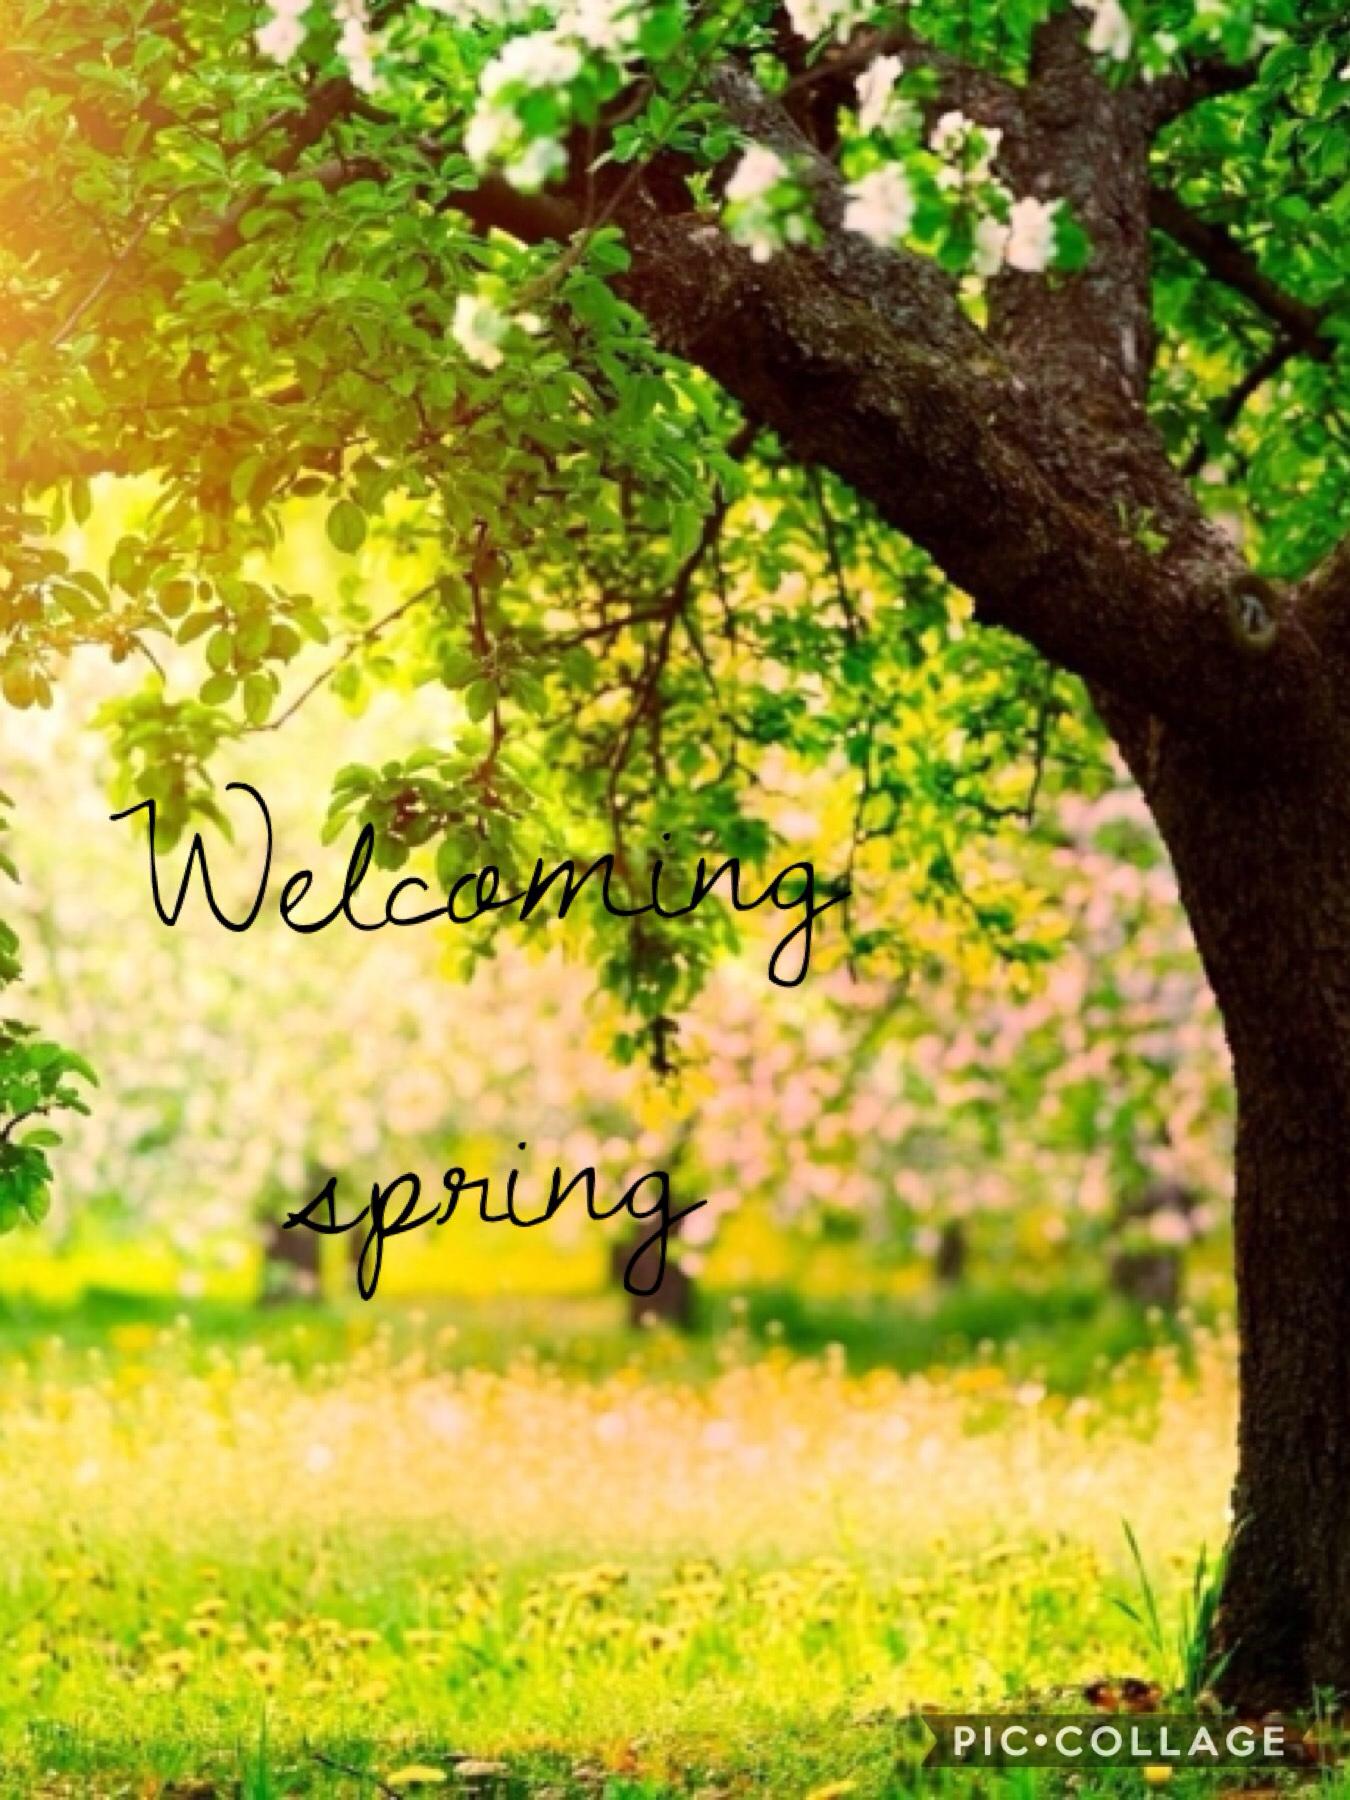 Spring ( Welcoming Spring )